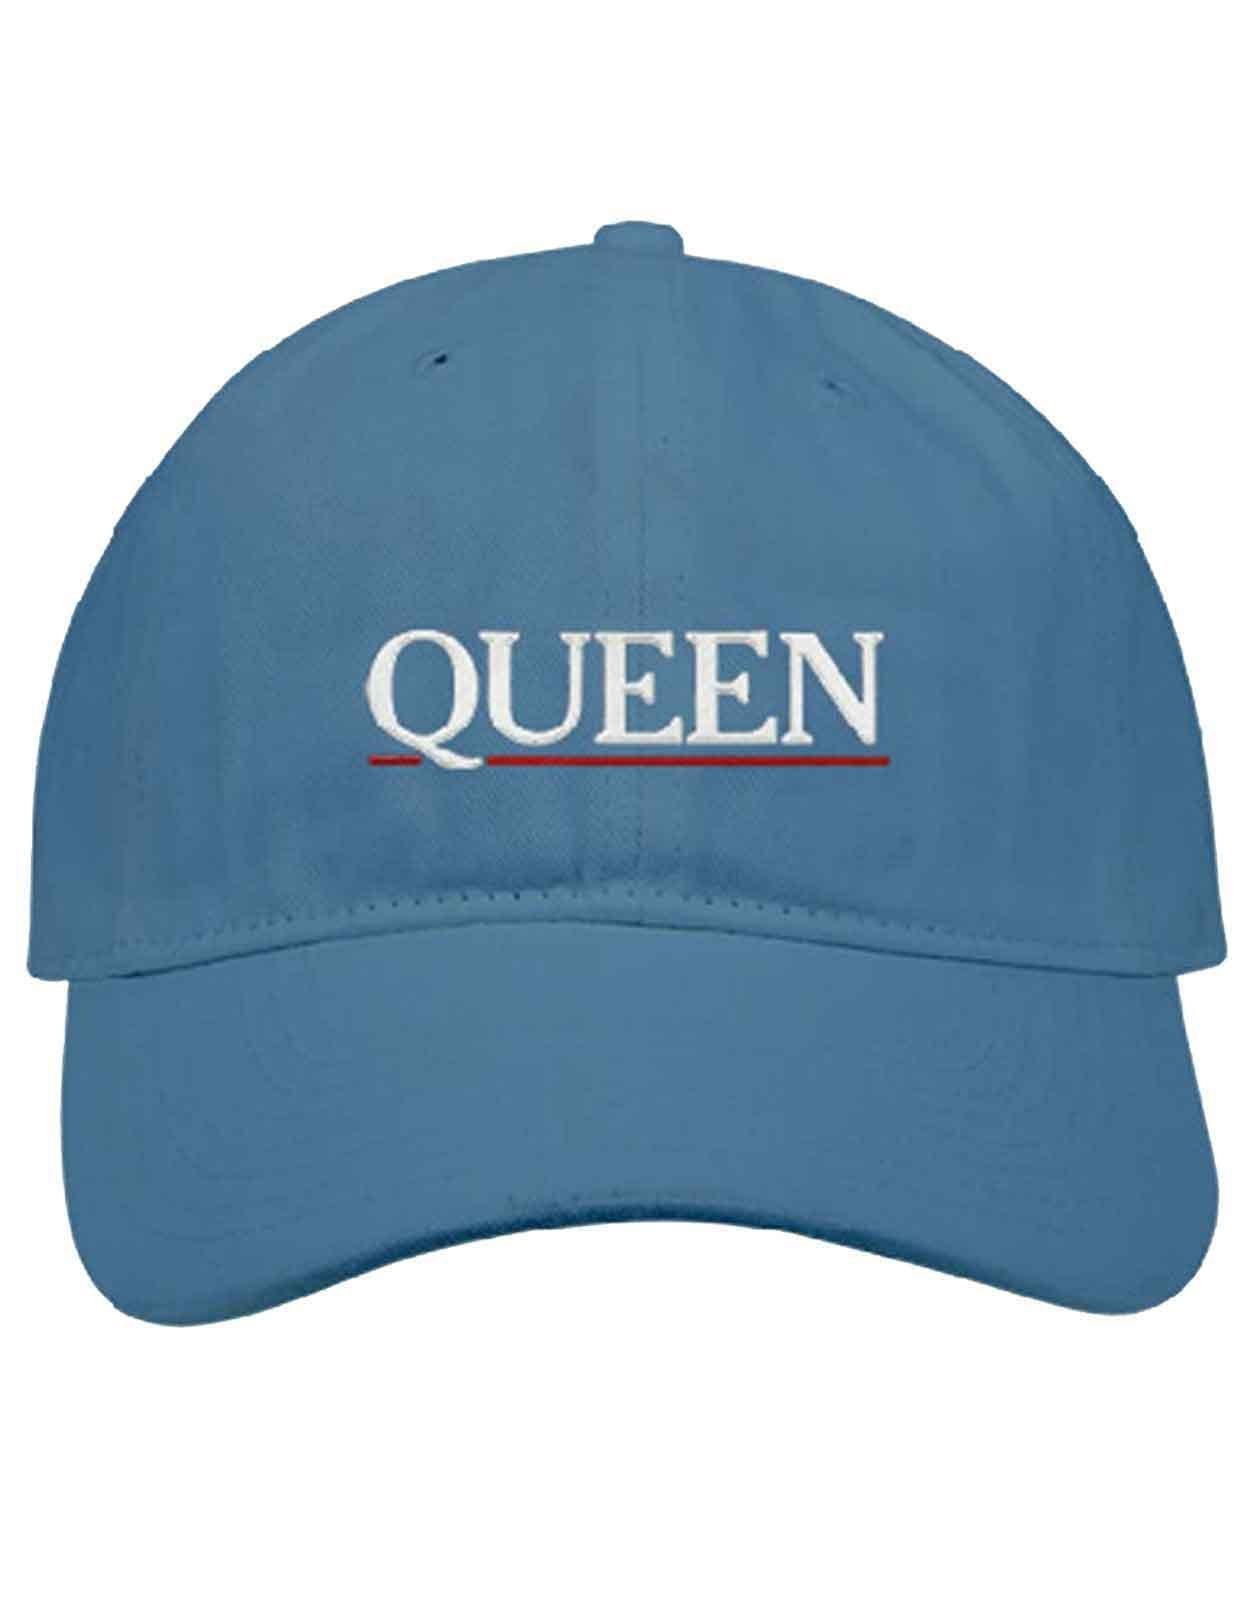 Бейсбольная кепка с логотипом и полоской с подчеркиванием Queen, синий шапка миранда ламберта винтажная джинсовая бейсболка регулируемая унисекс